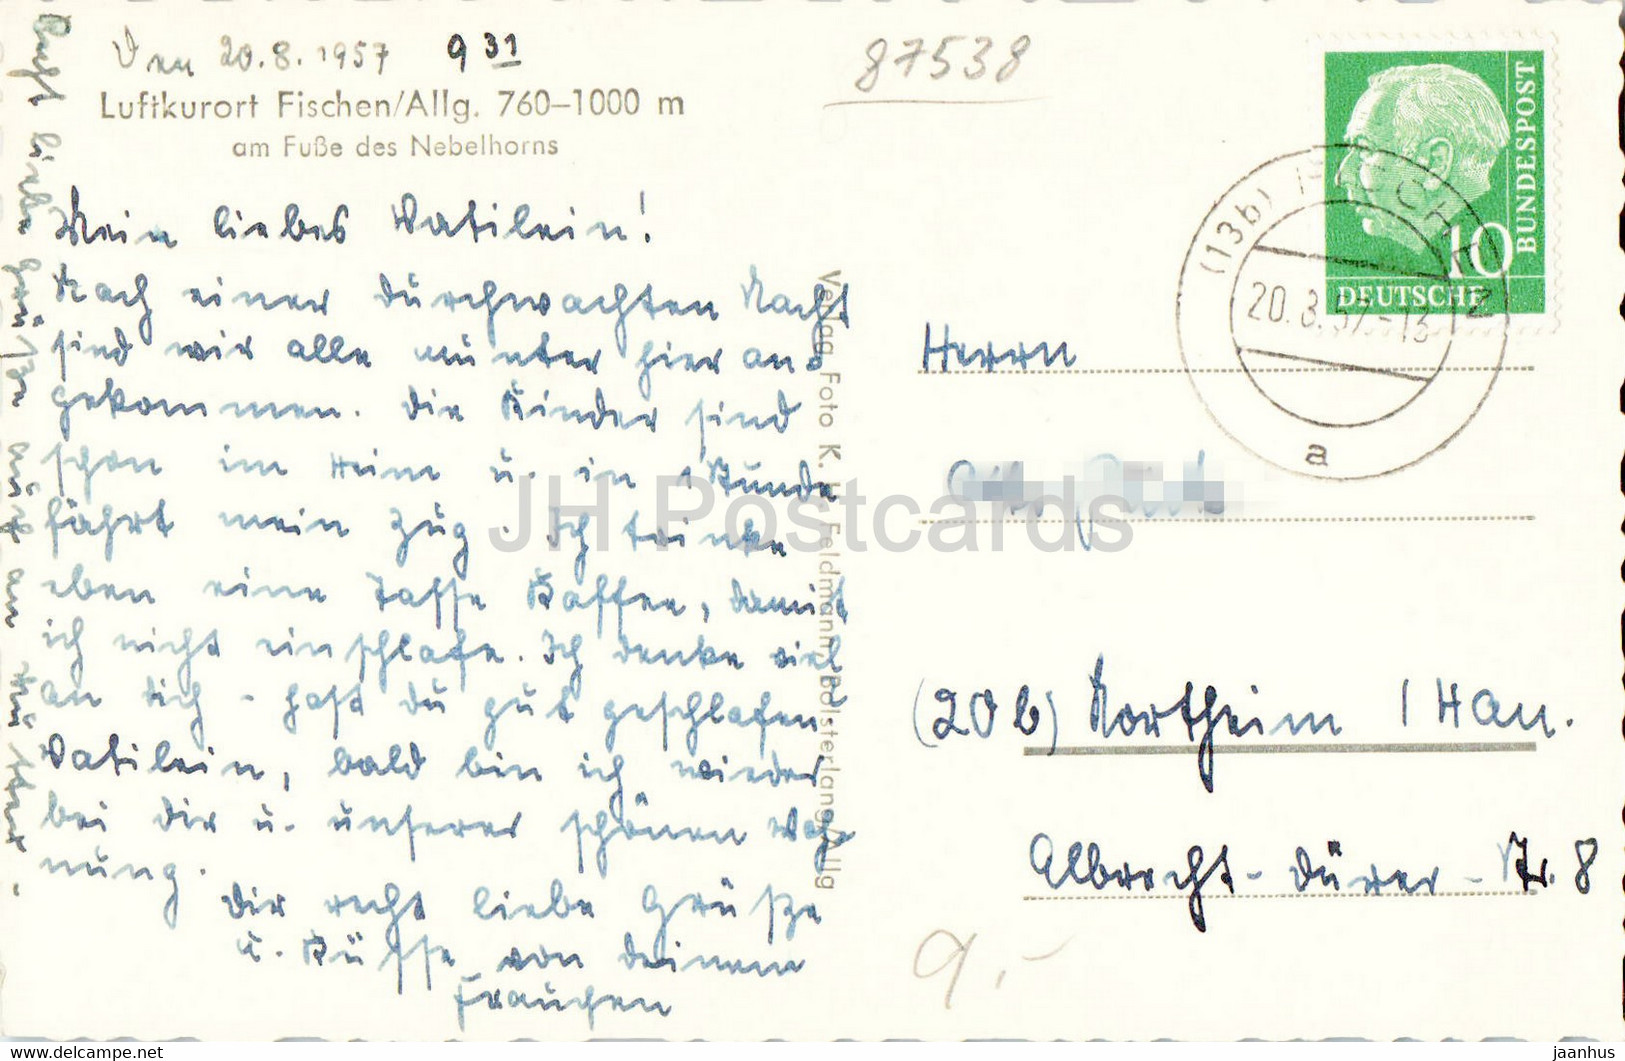 Luftkurort Fischen - Am Fusse Des Nebelhorns - Old Postcard - 1957 - Germany - Used - Fischen